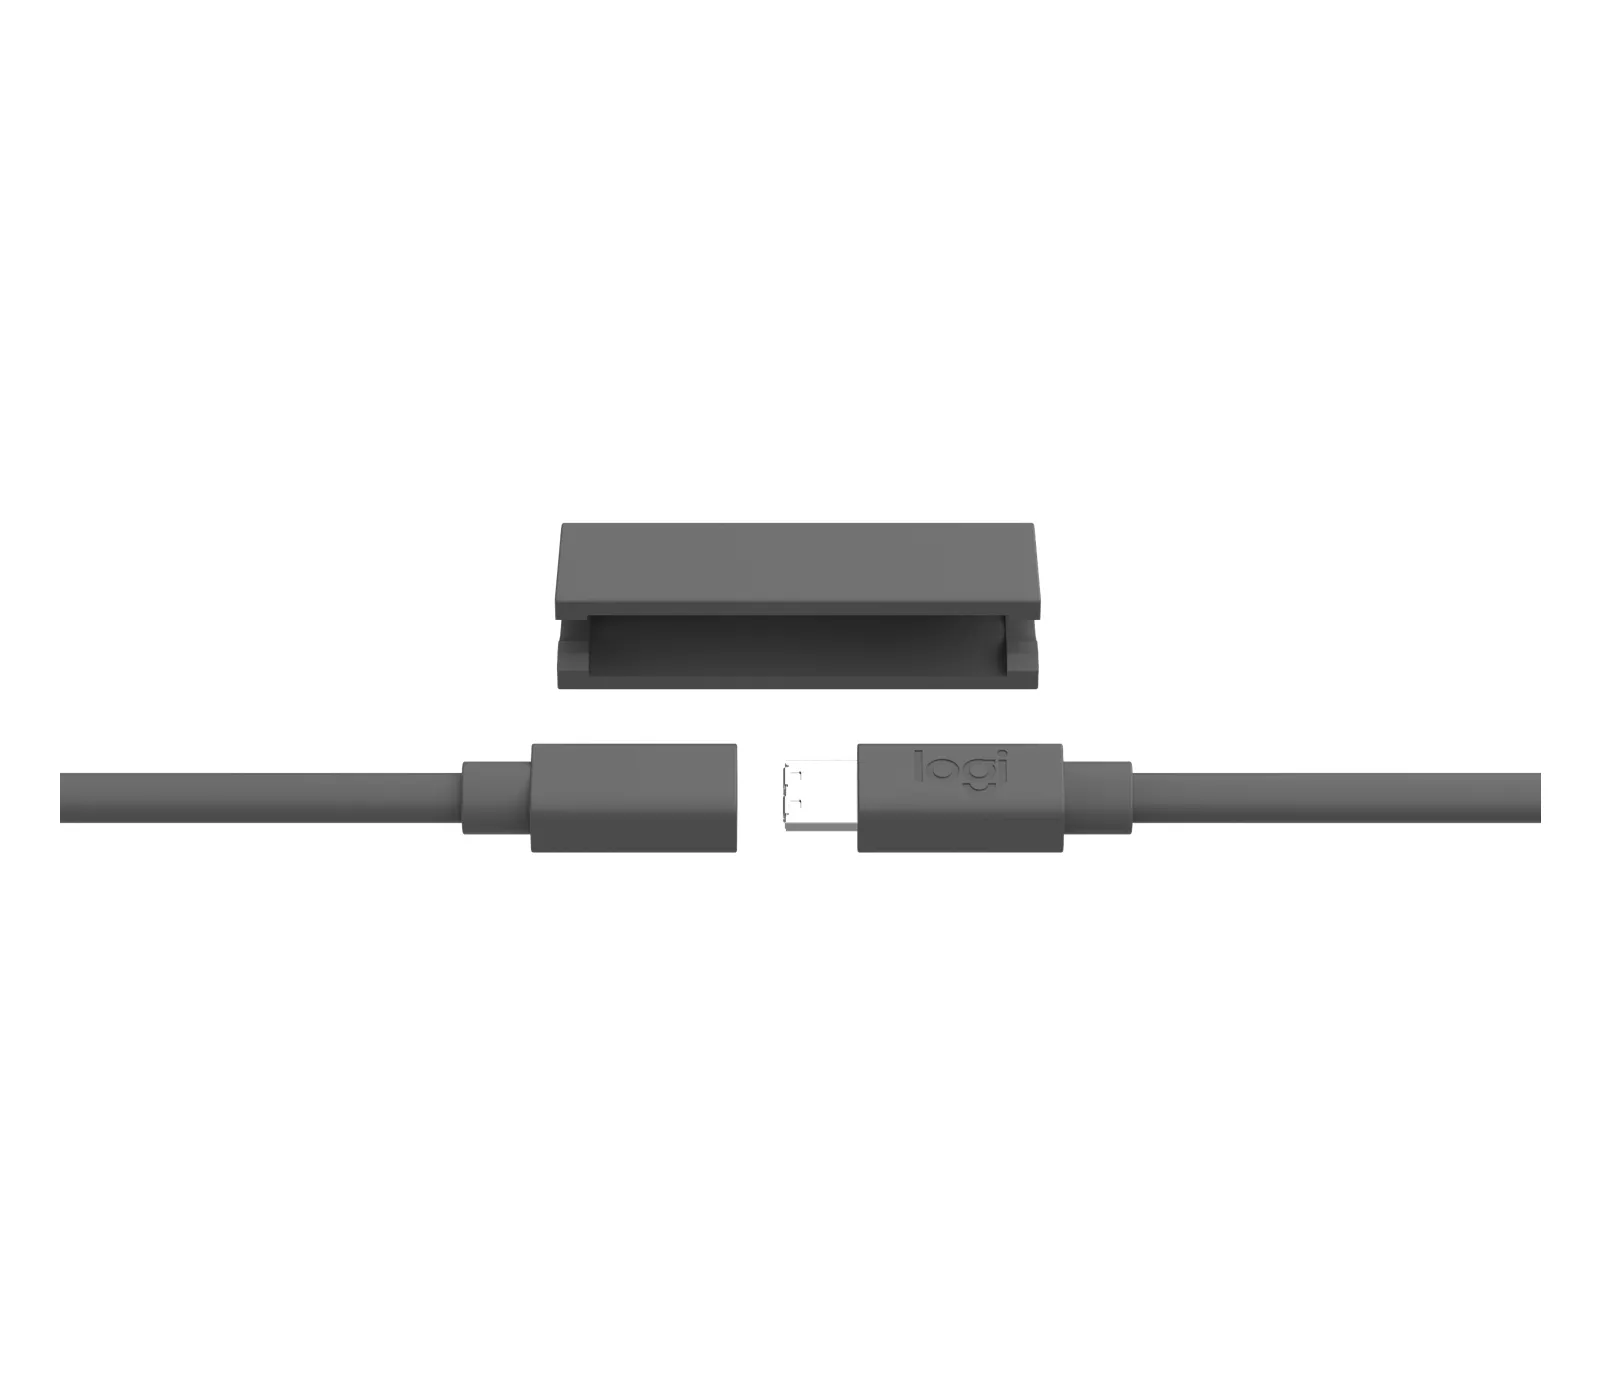 Vente LOGITECH MeetUp Microphone extension cable 10 m for Logitech au meilleur prix - visuel 2